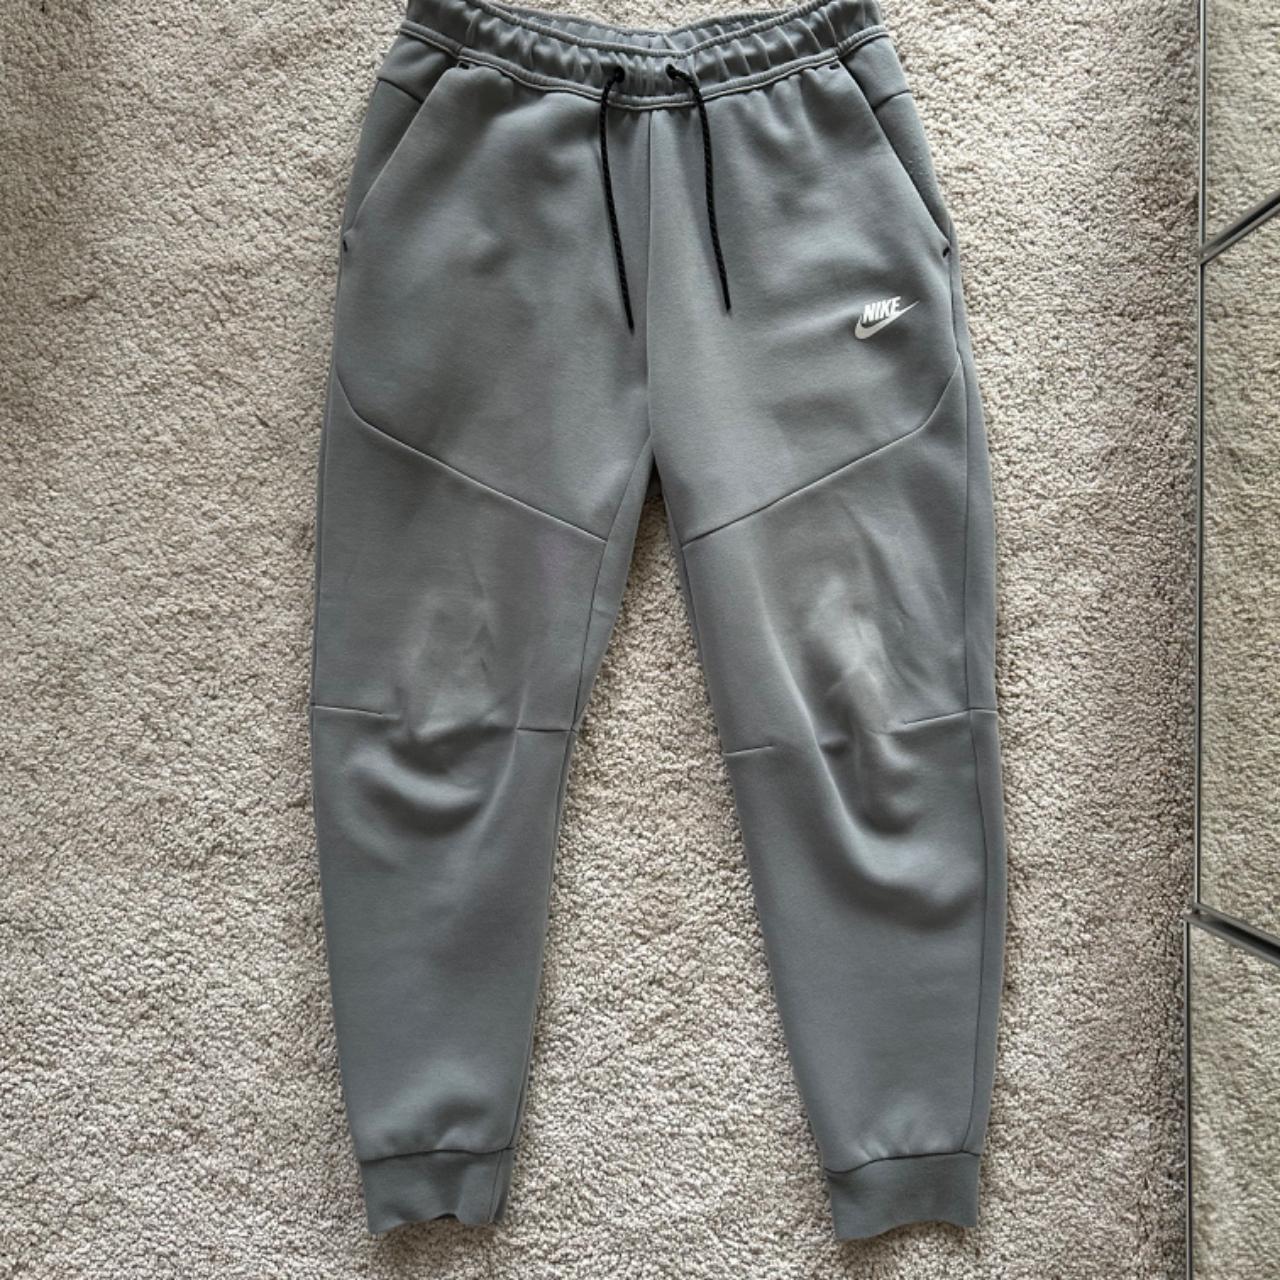 Nike tech fleece trousers size M Pretty worn -... - Depop